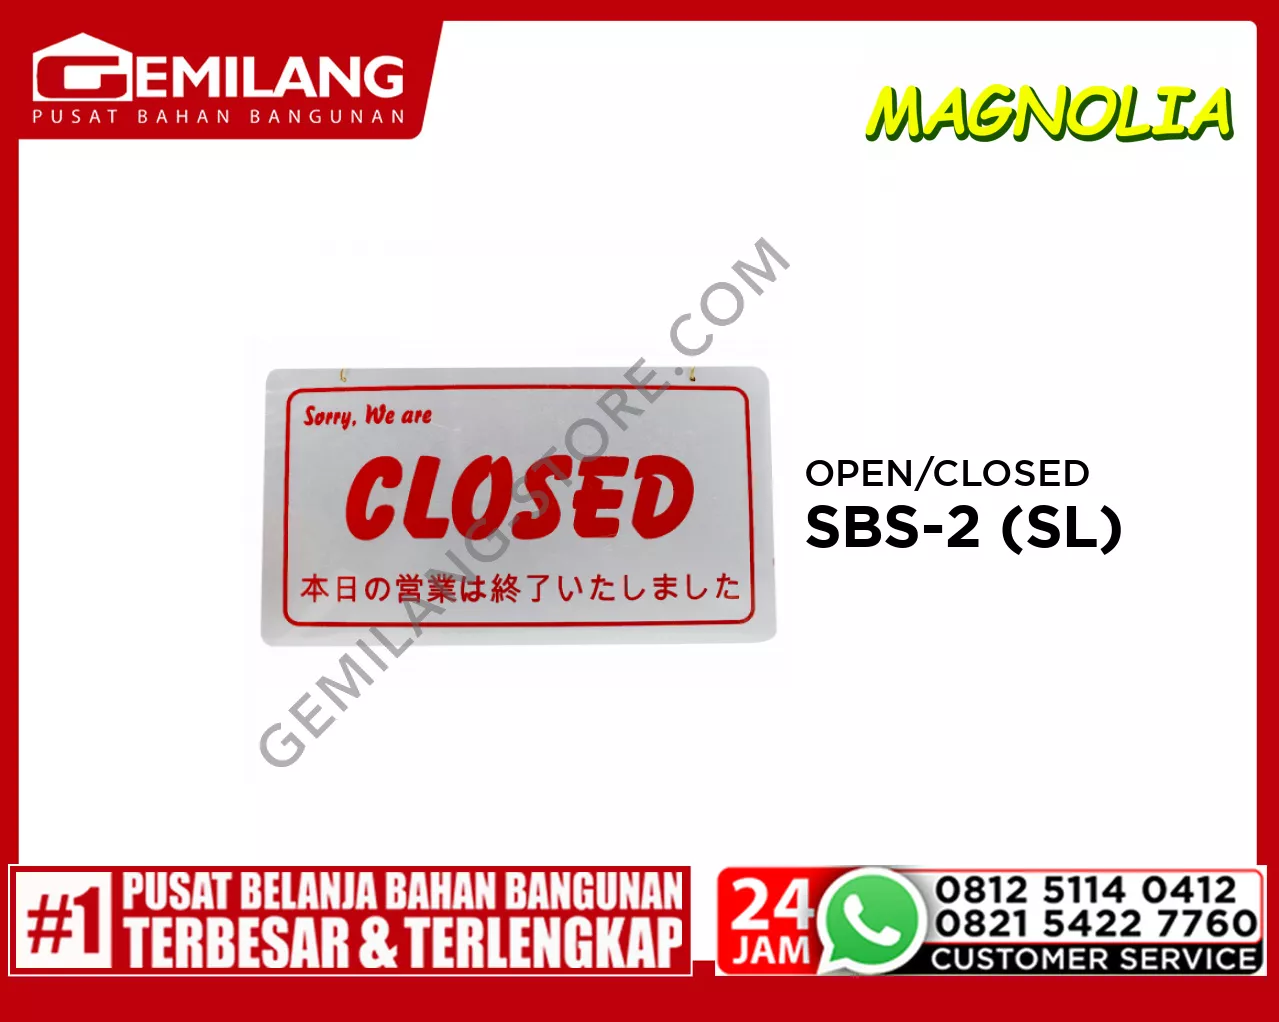 OPEN/CLOSED SBS-2 (SL)